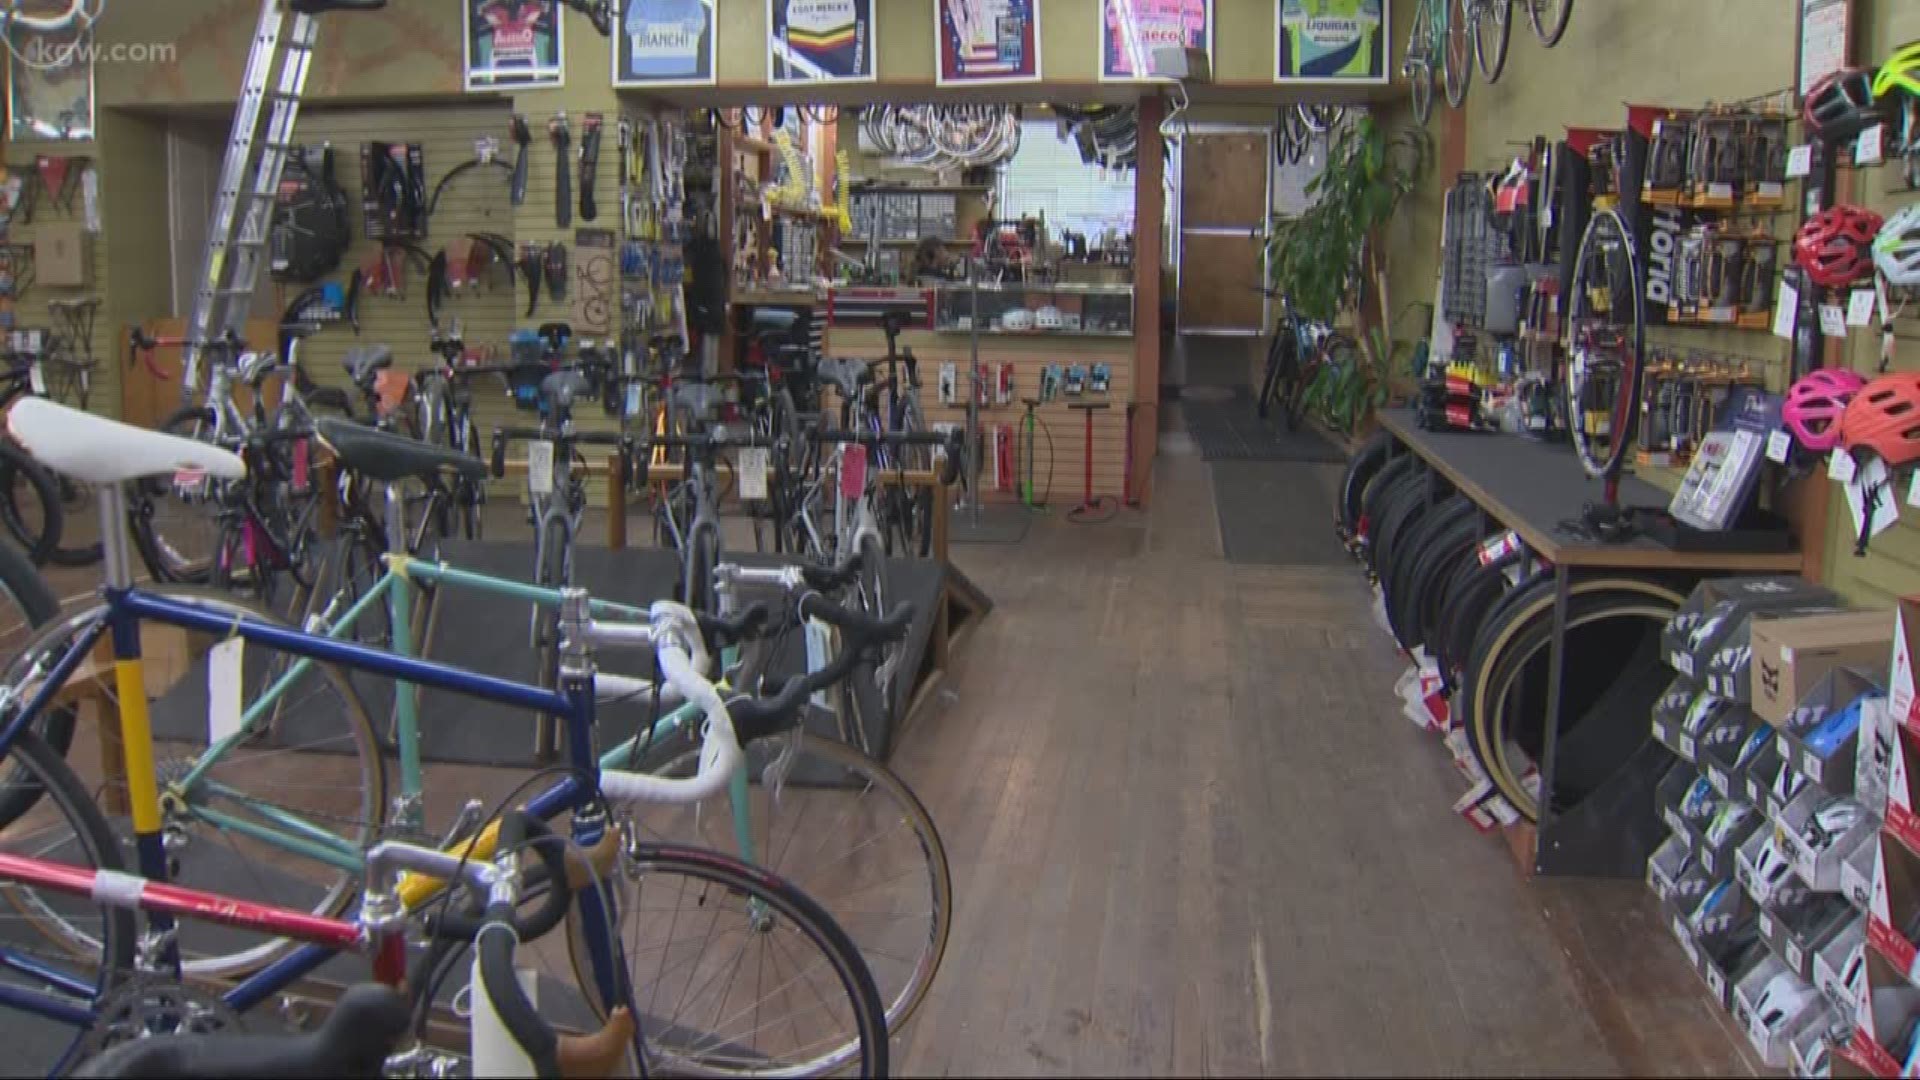 Lake Oswego bike shop nabs suspect selling stolen goods online kgw